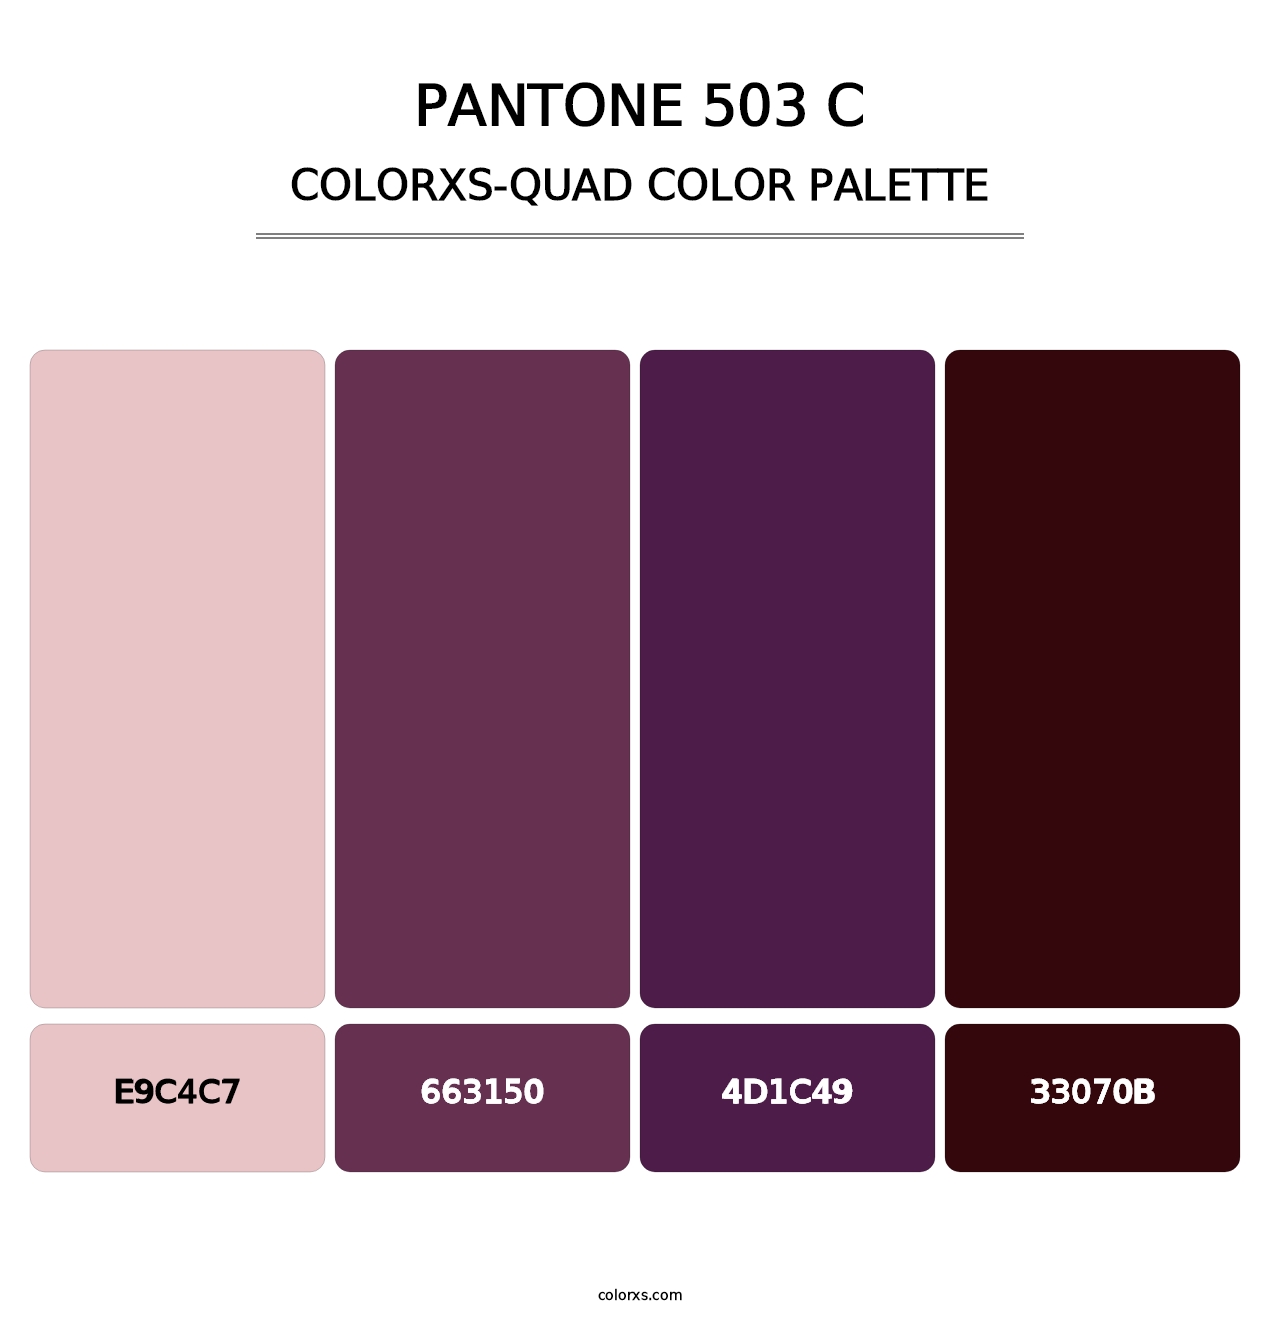 PANTONE 503 C - Colorxs Quad Palette